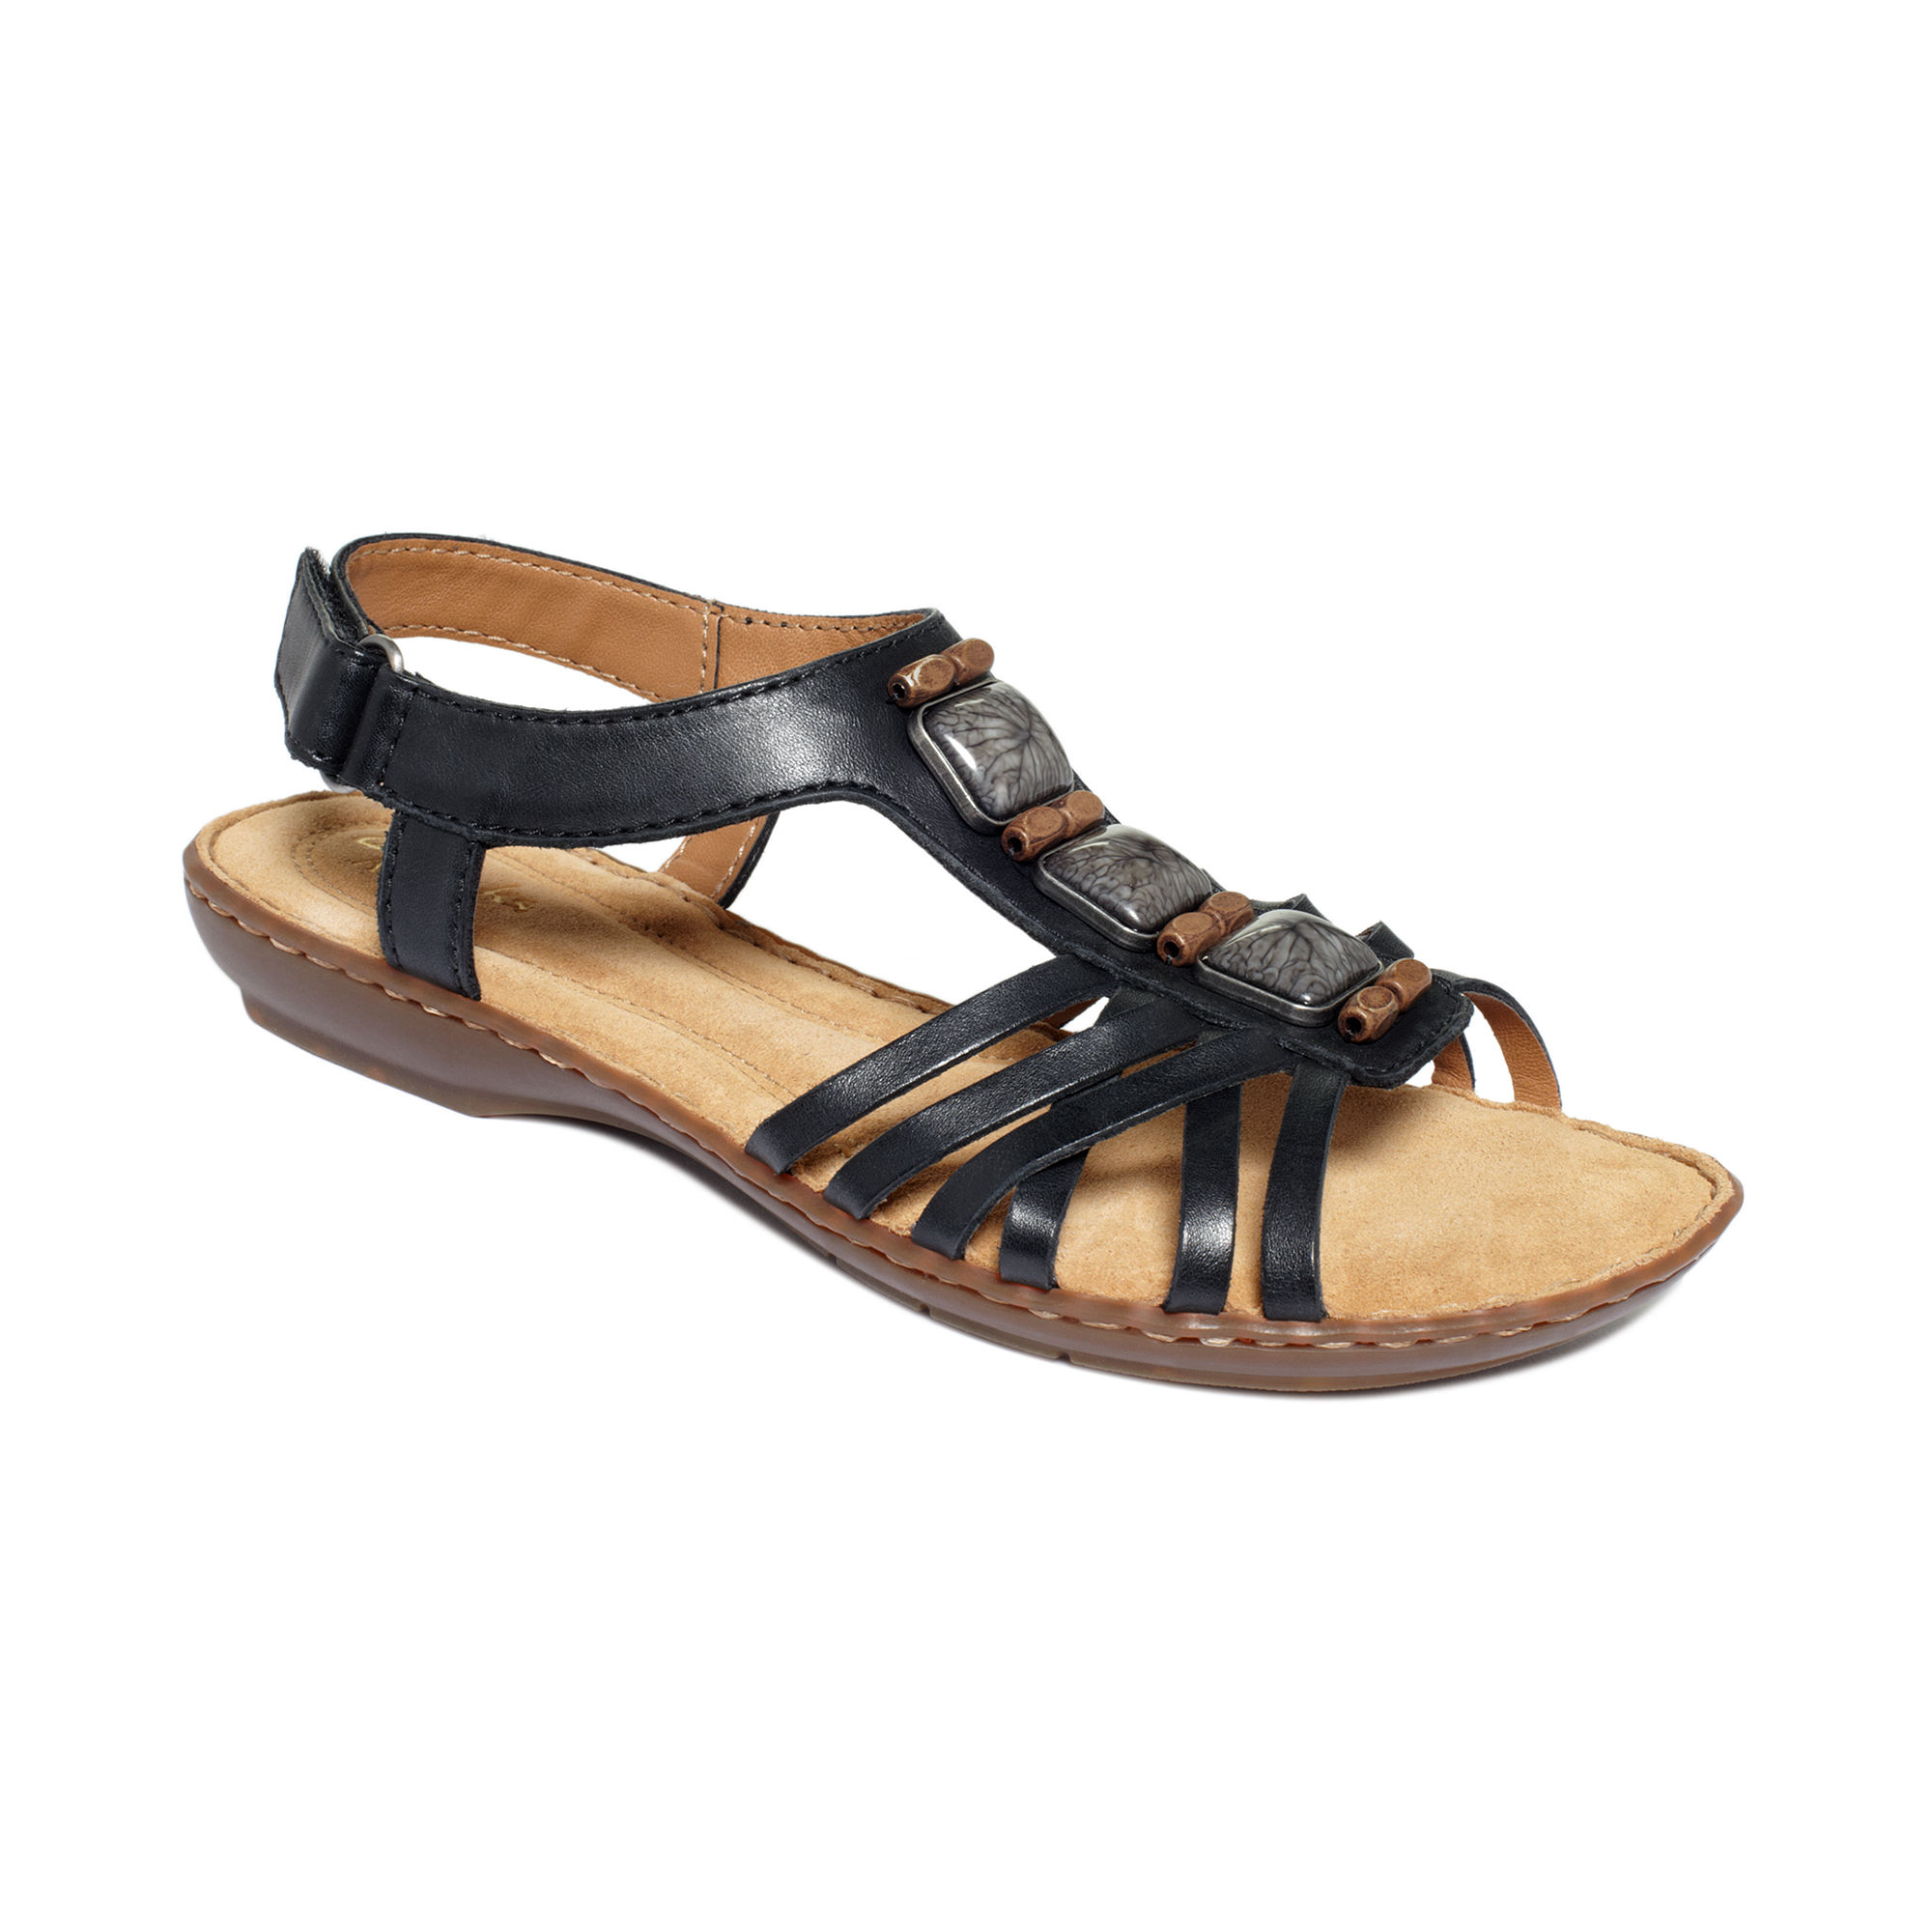 Aerosole Sandals: Clarks Sandals Artisan